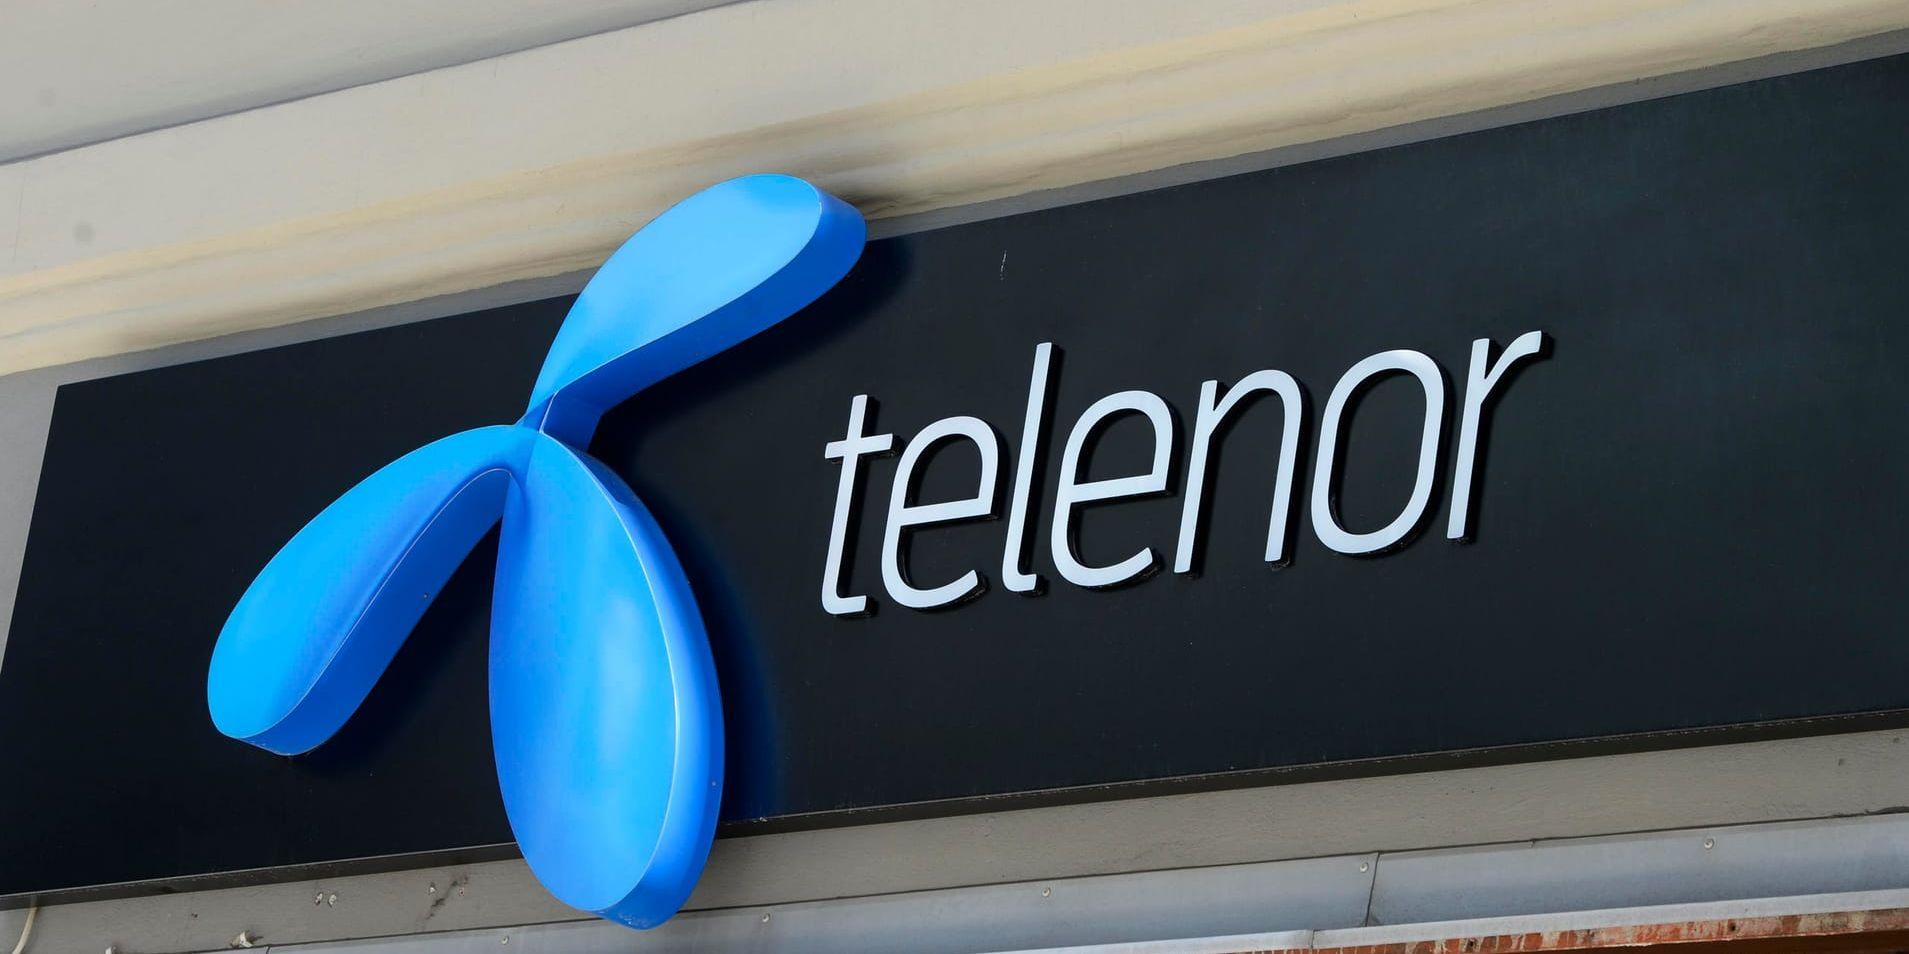 Hi3G Access (Tre) och Telenor måste betala 1,5 miljarder kronor respektive 244 miljoner kronor mer i utgående moms, enligt ett beslut i förvaltningsrätten. Men domen kommer att överklagas. Arkivbild.